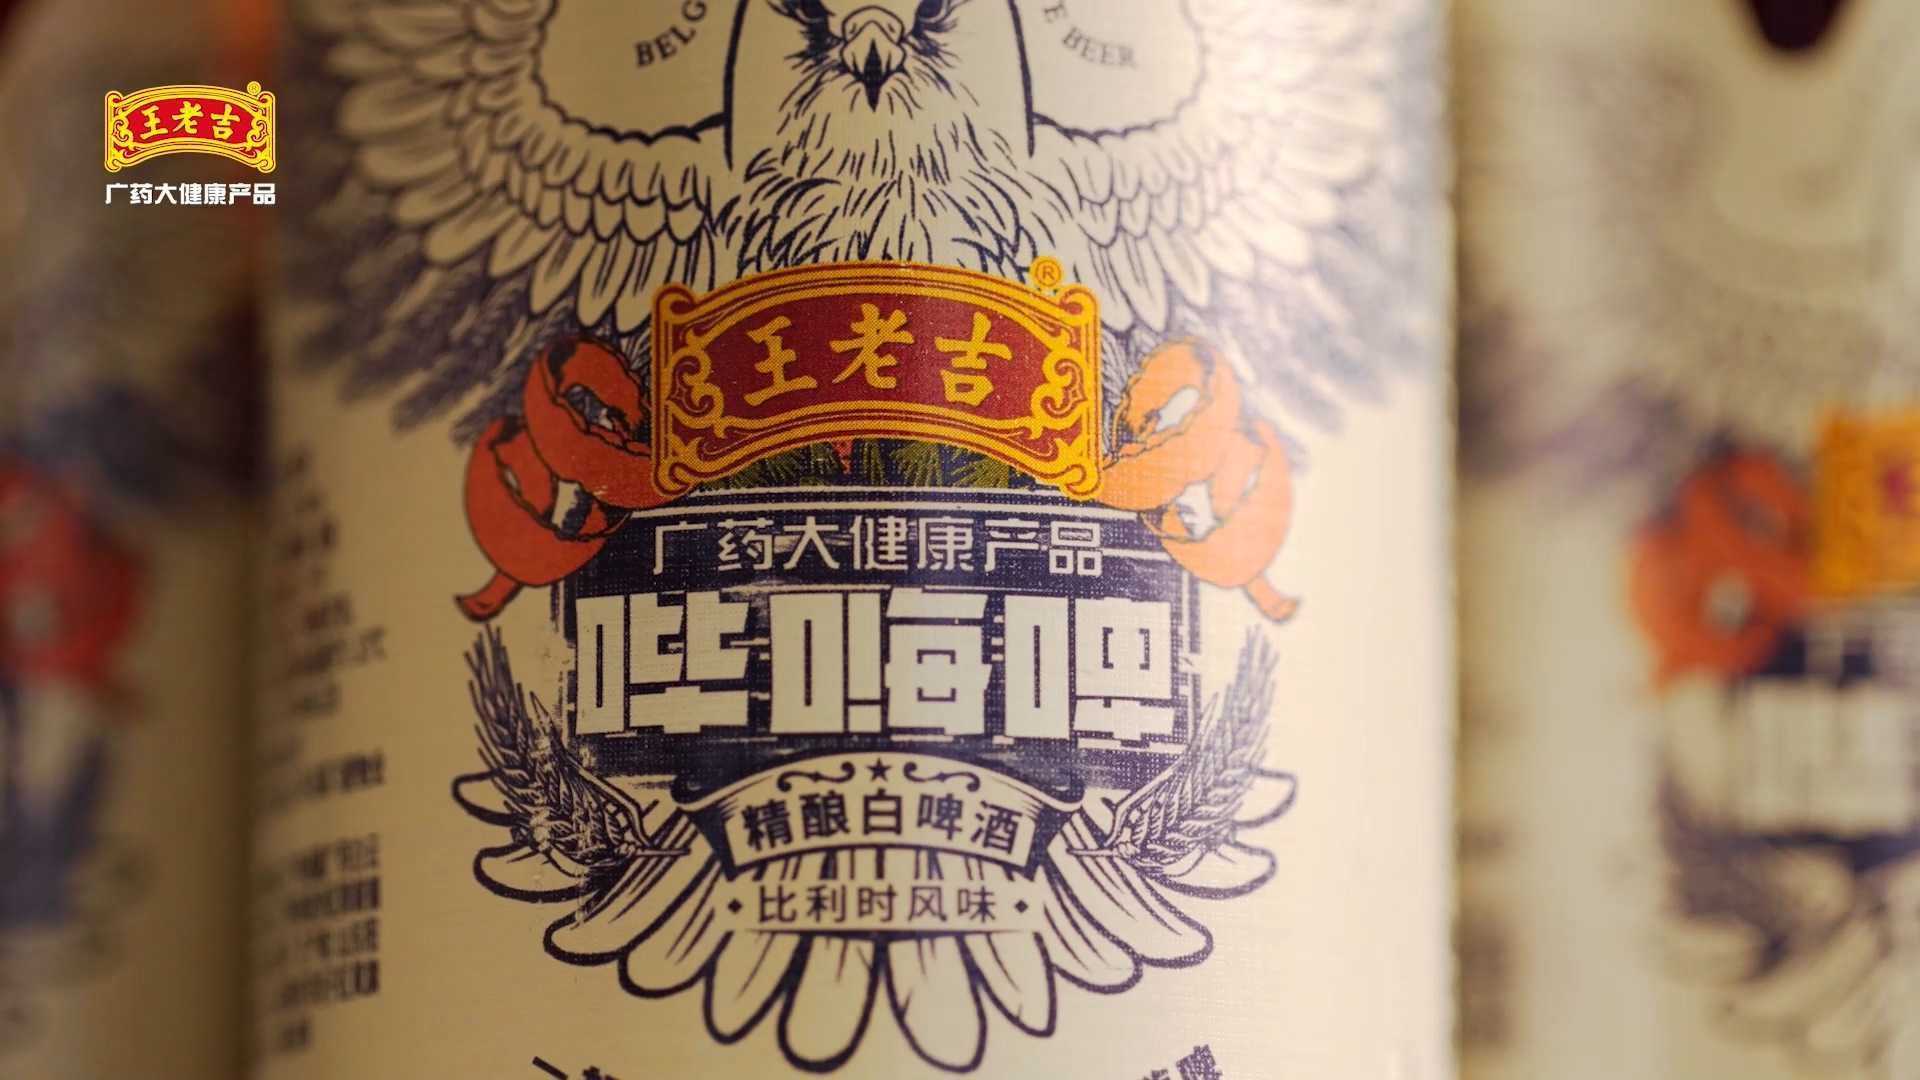 王老吉比利时精酿白啤酒 产品展示